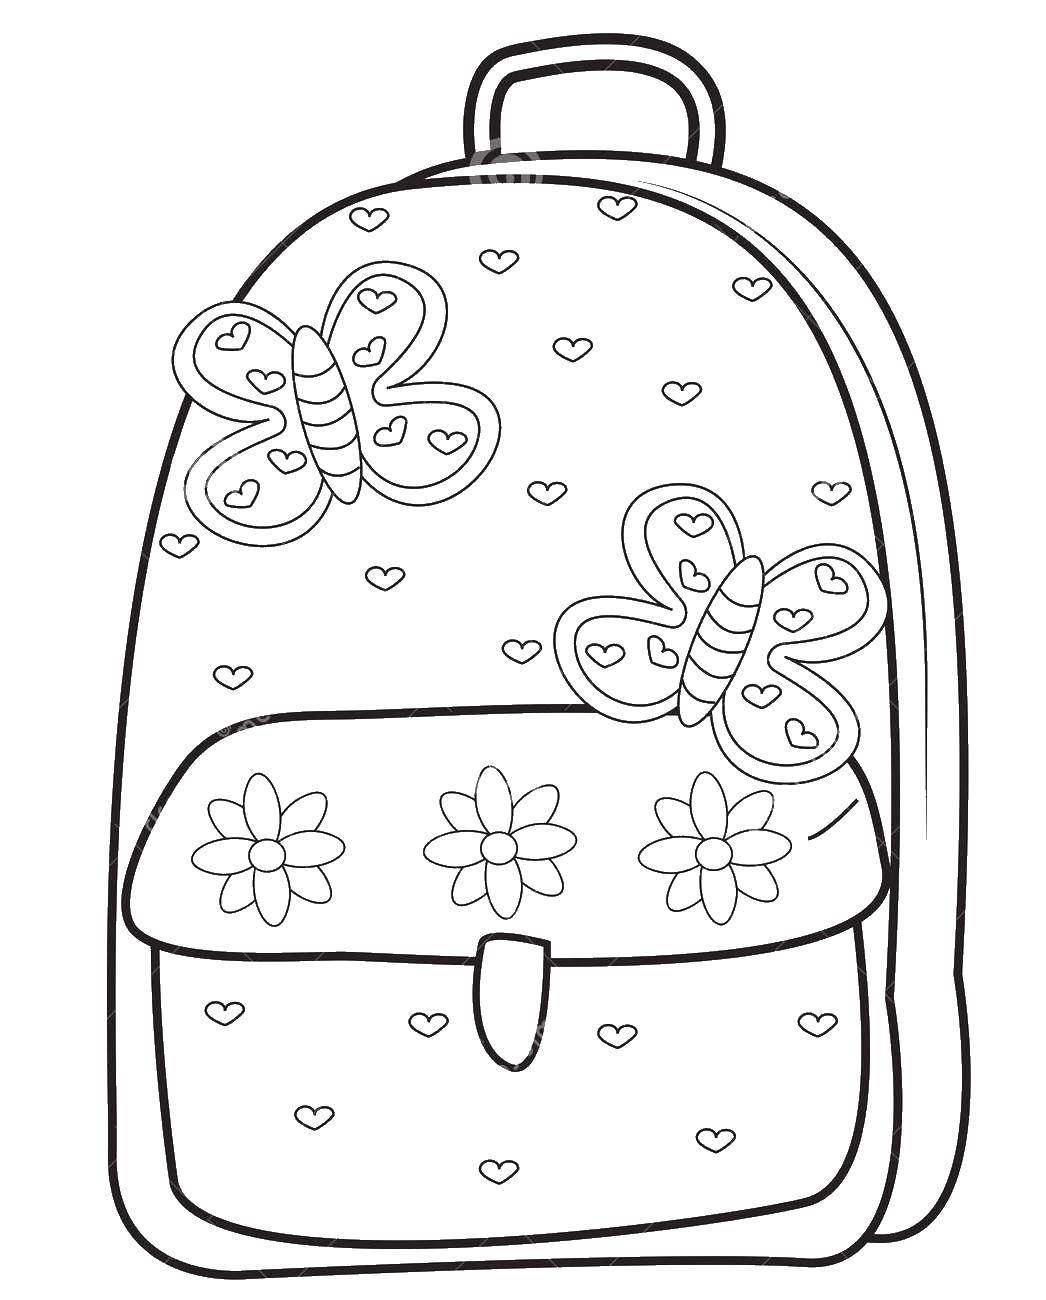 Coloring School bag. Category school. Tags:  School, student, portfolio.